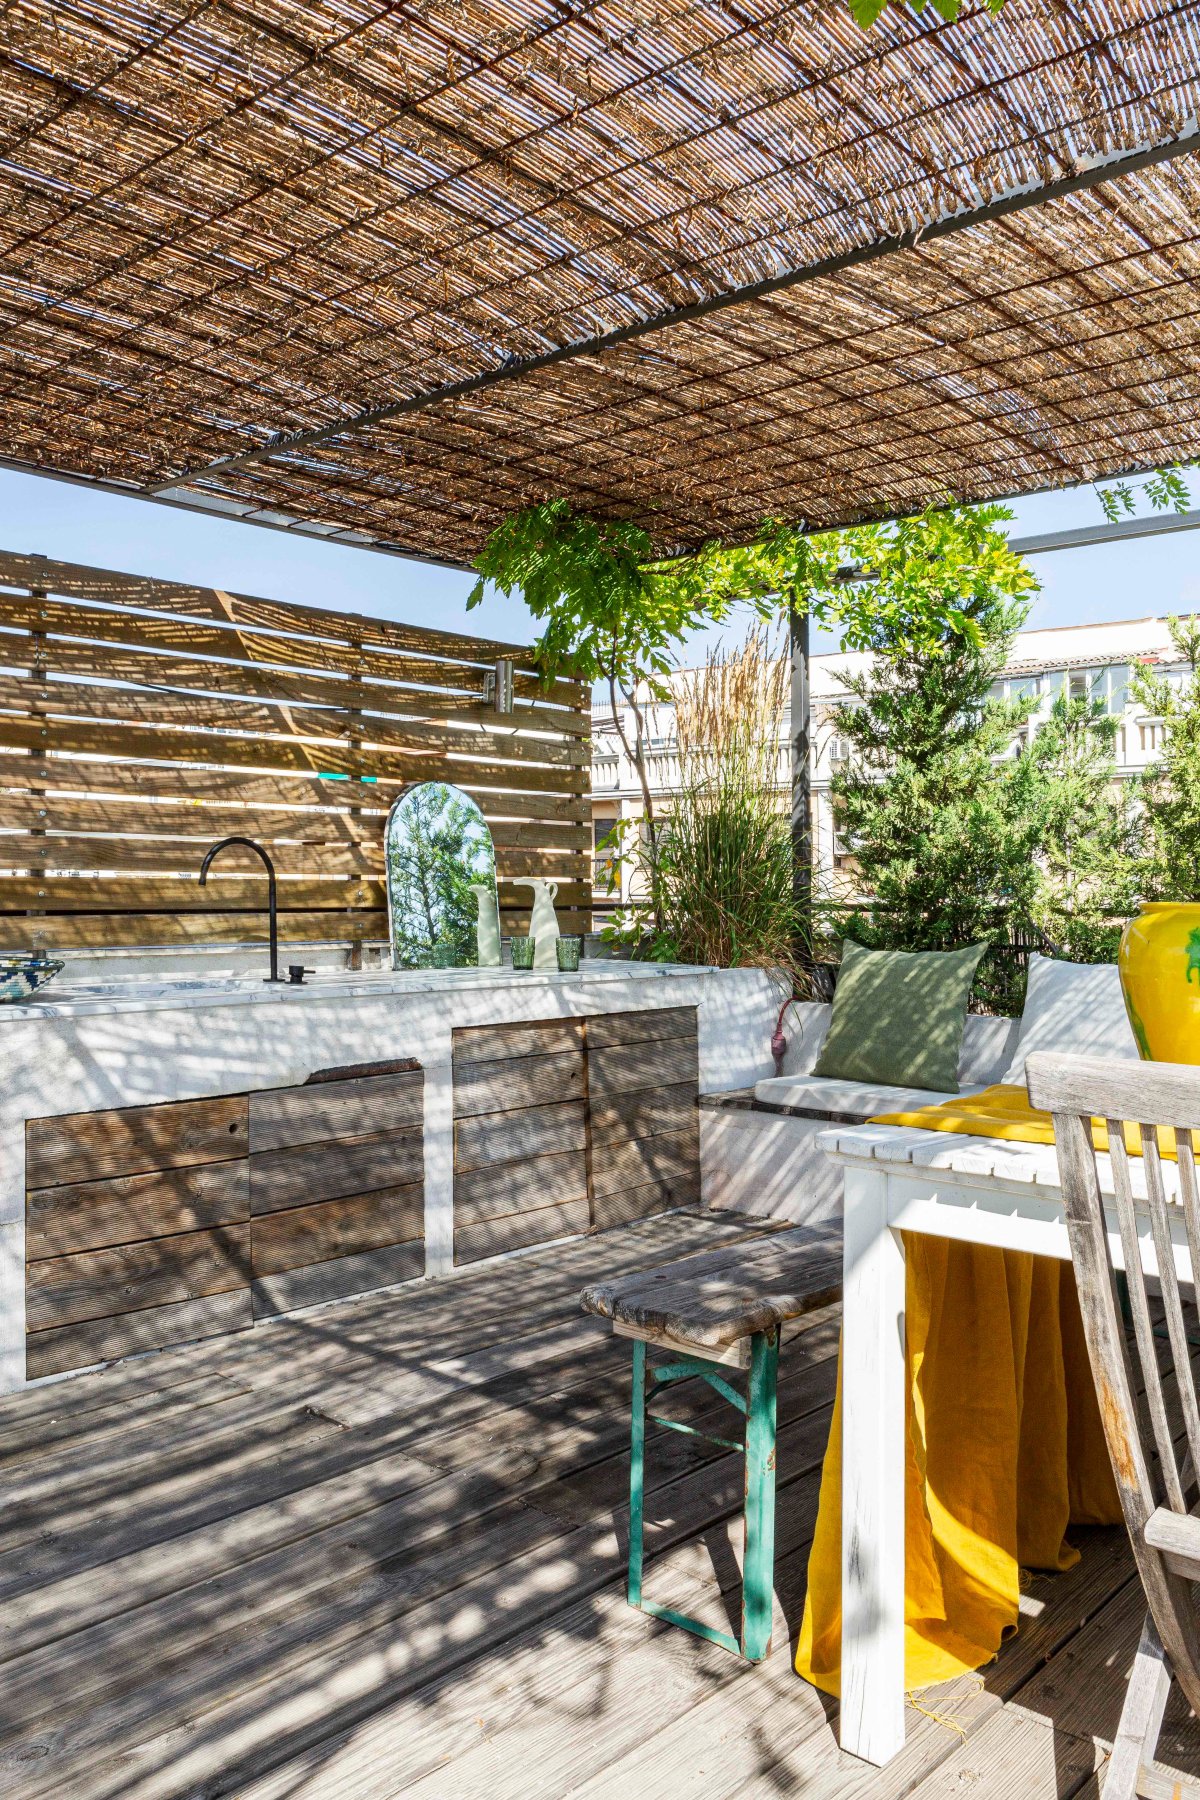 Terraza de madera con aires mediterráneos y cocina de obra